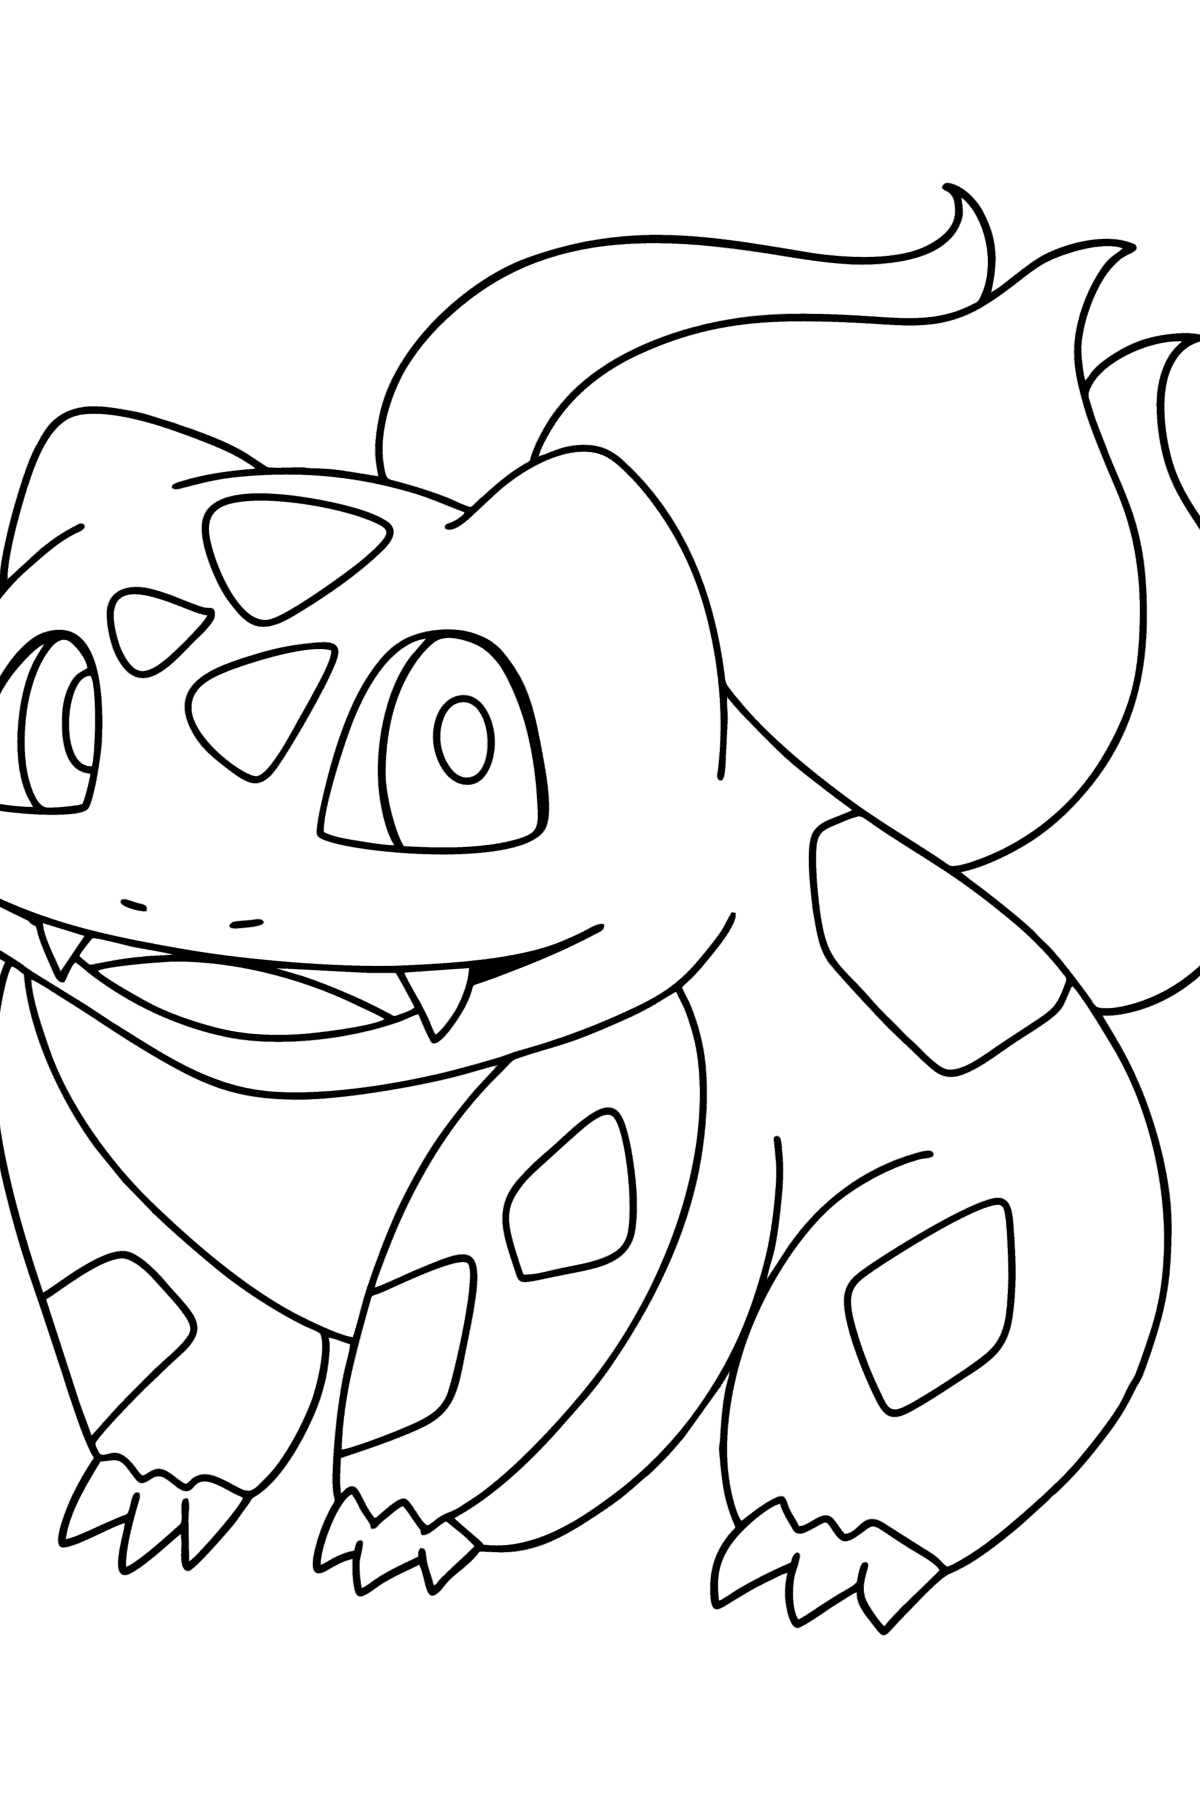 Tegning til farvning Pokémon Go Bulbasaur - Tegninger til farvelægning for børn